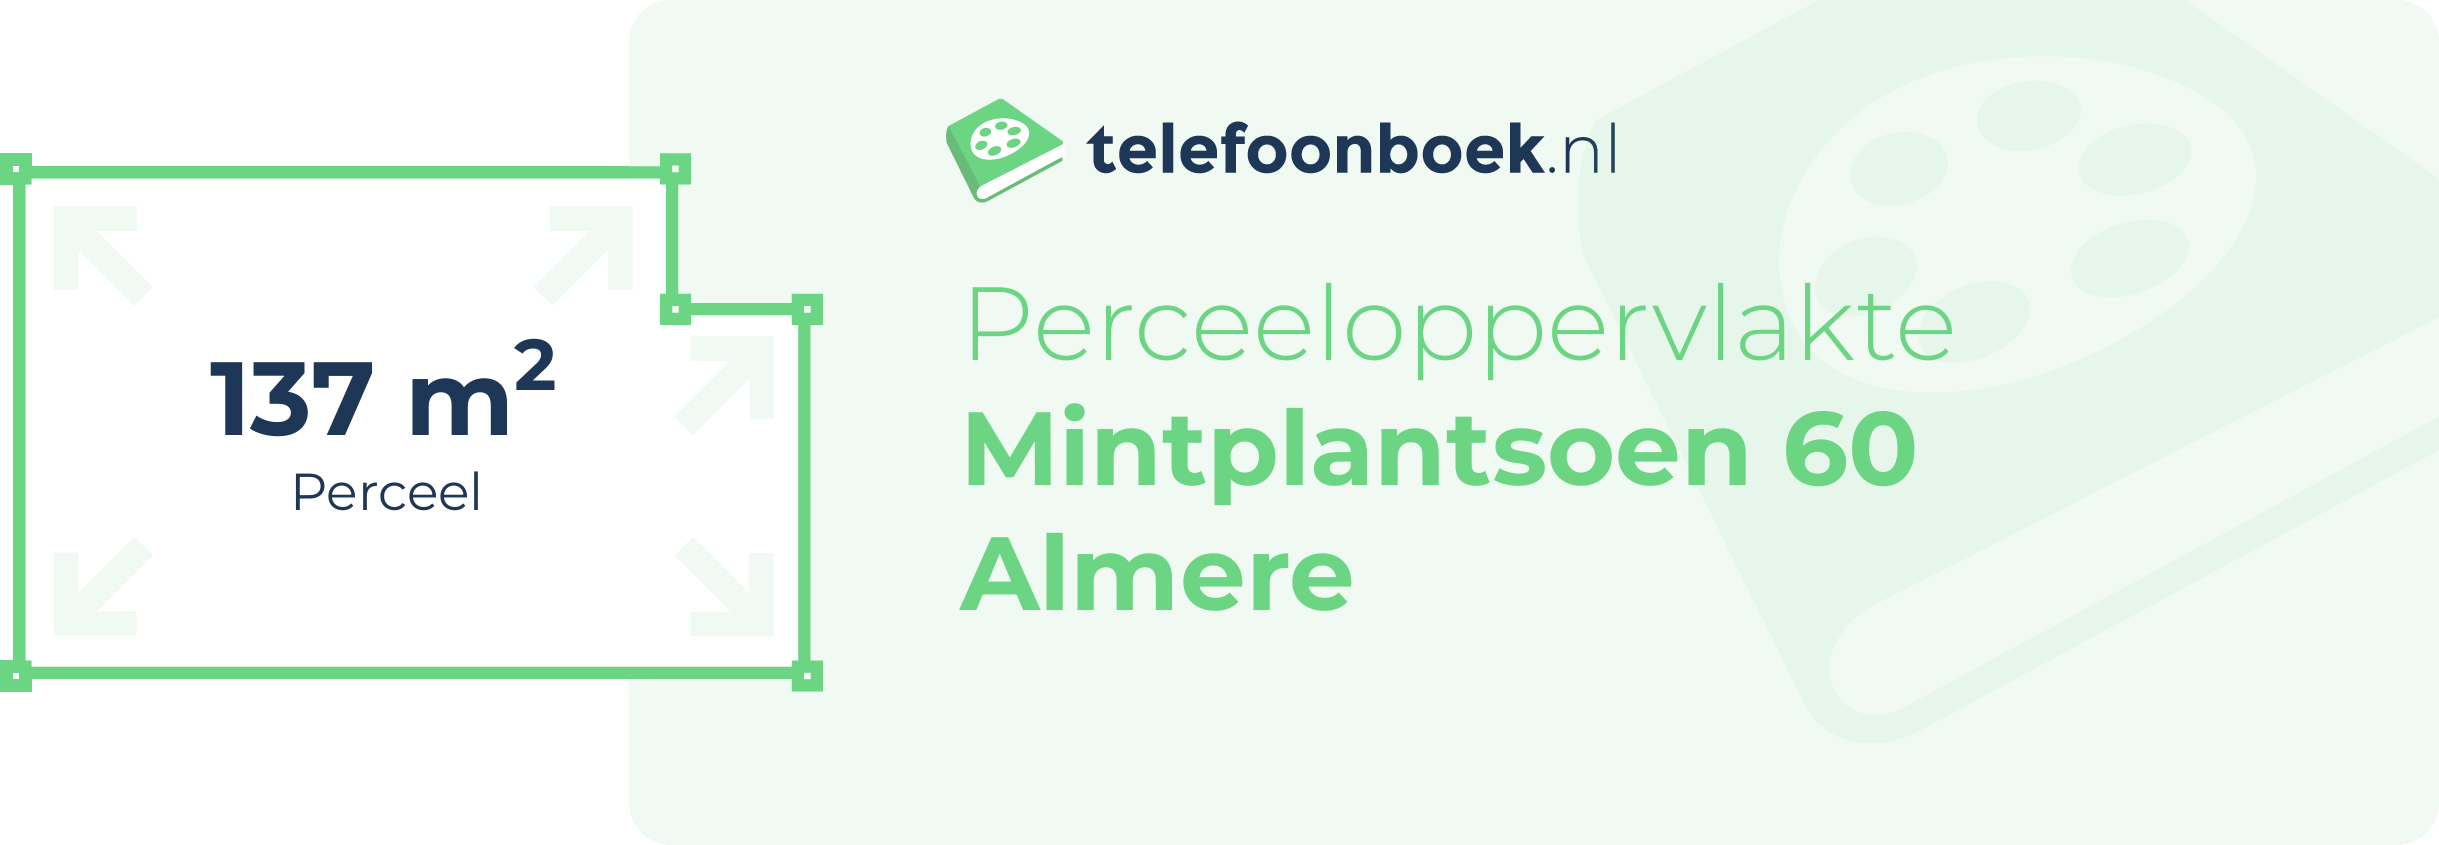 Perceeloppervlakte Mintplantsoen 60 Almere